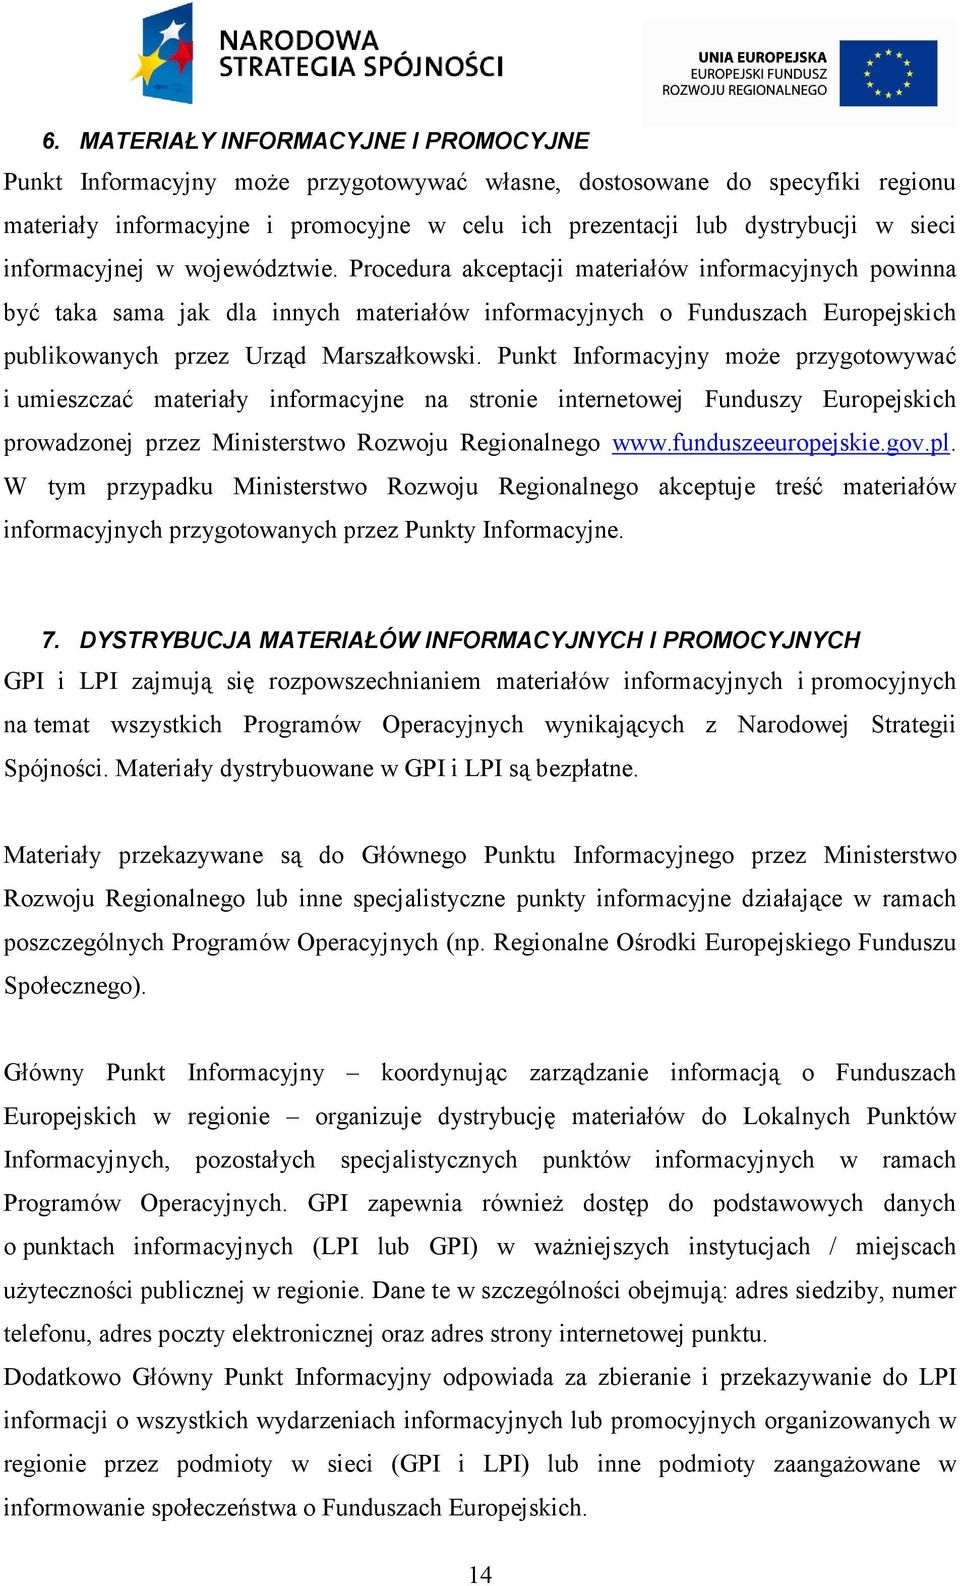 Procedura akceptacji materiałów informacyjnych powinna być taka sama jak dla innych materiałów informacyjnych o Funduszach Europejskich publikowanych przez Urząd Marszałkowski.